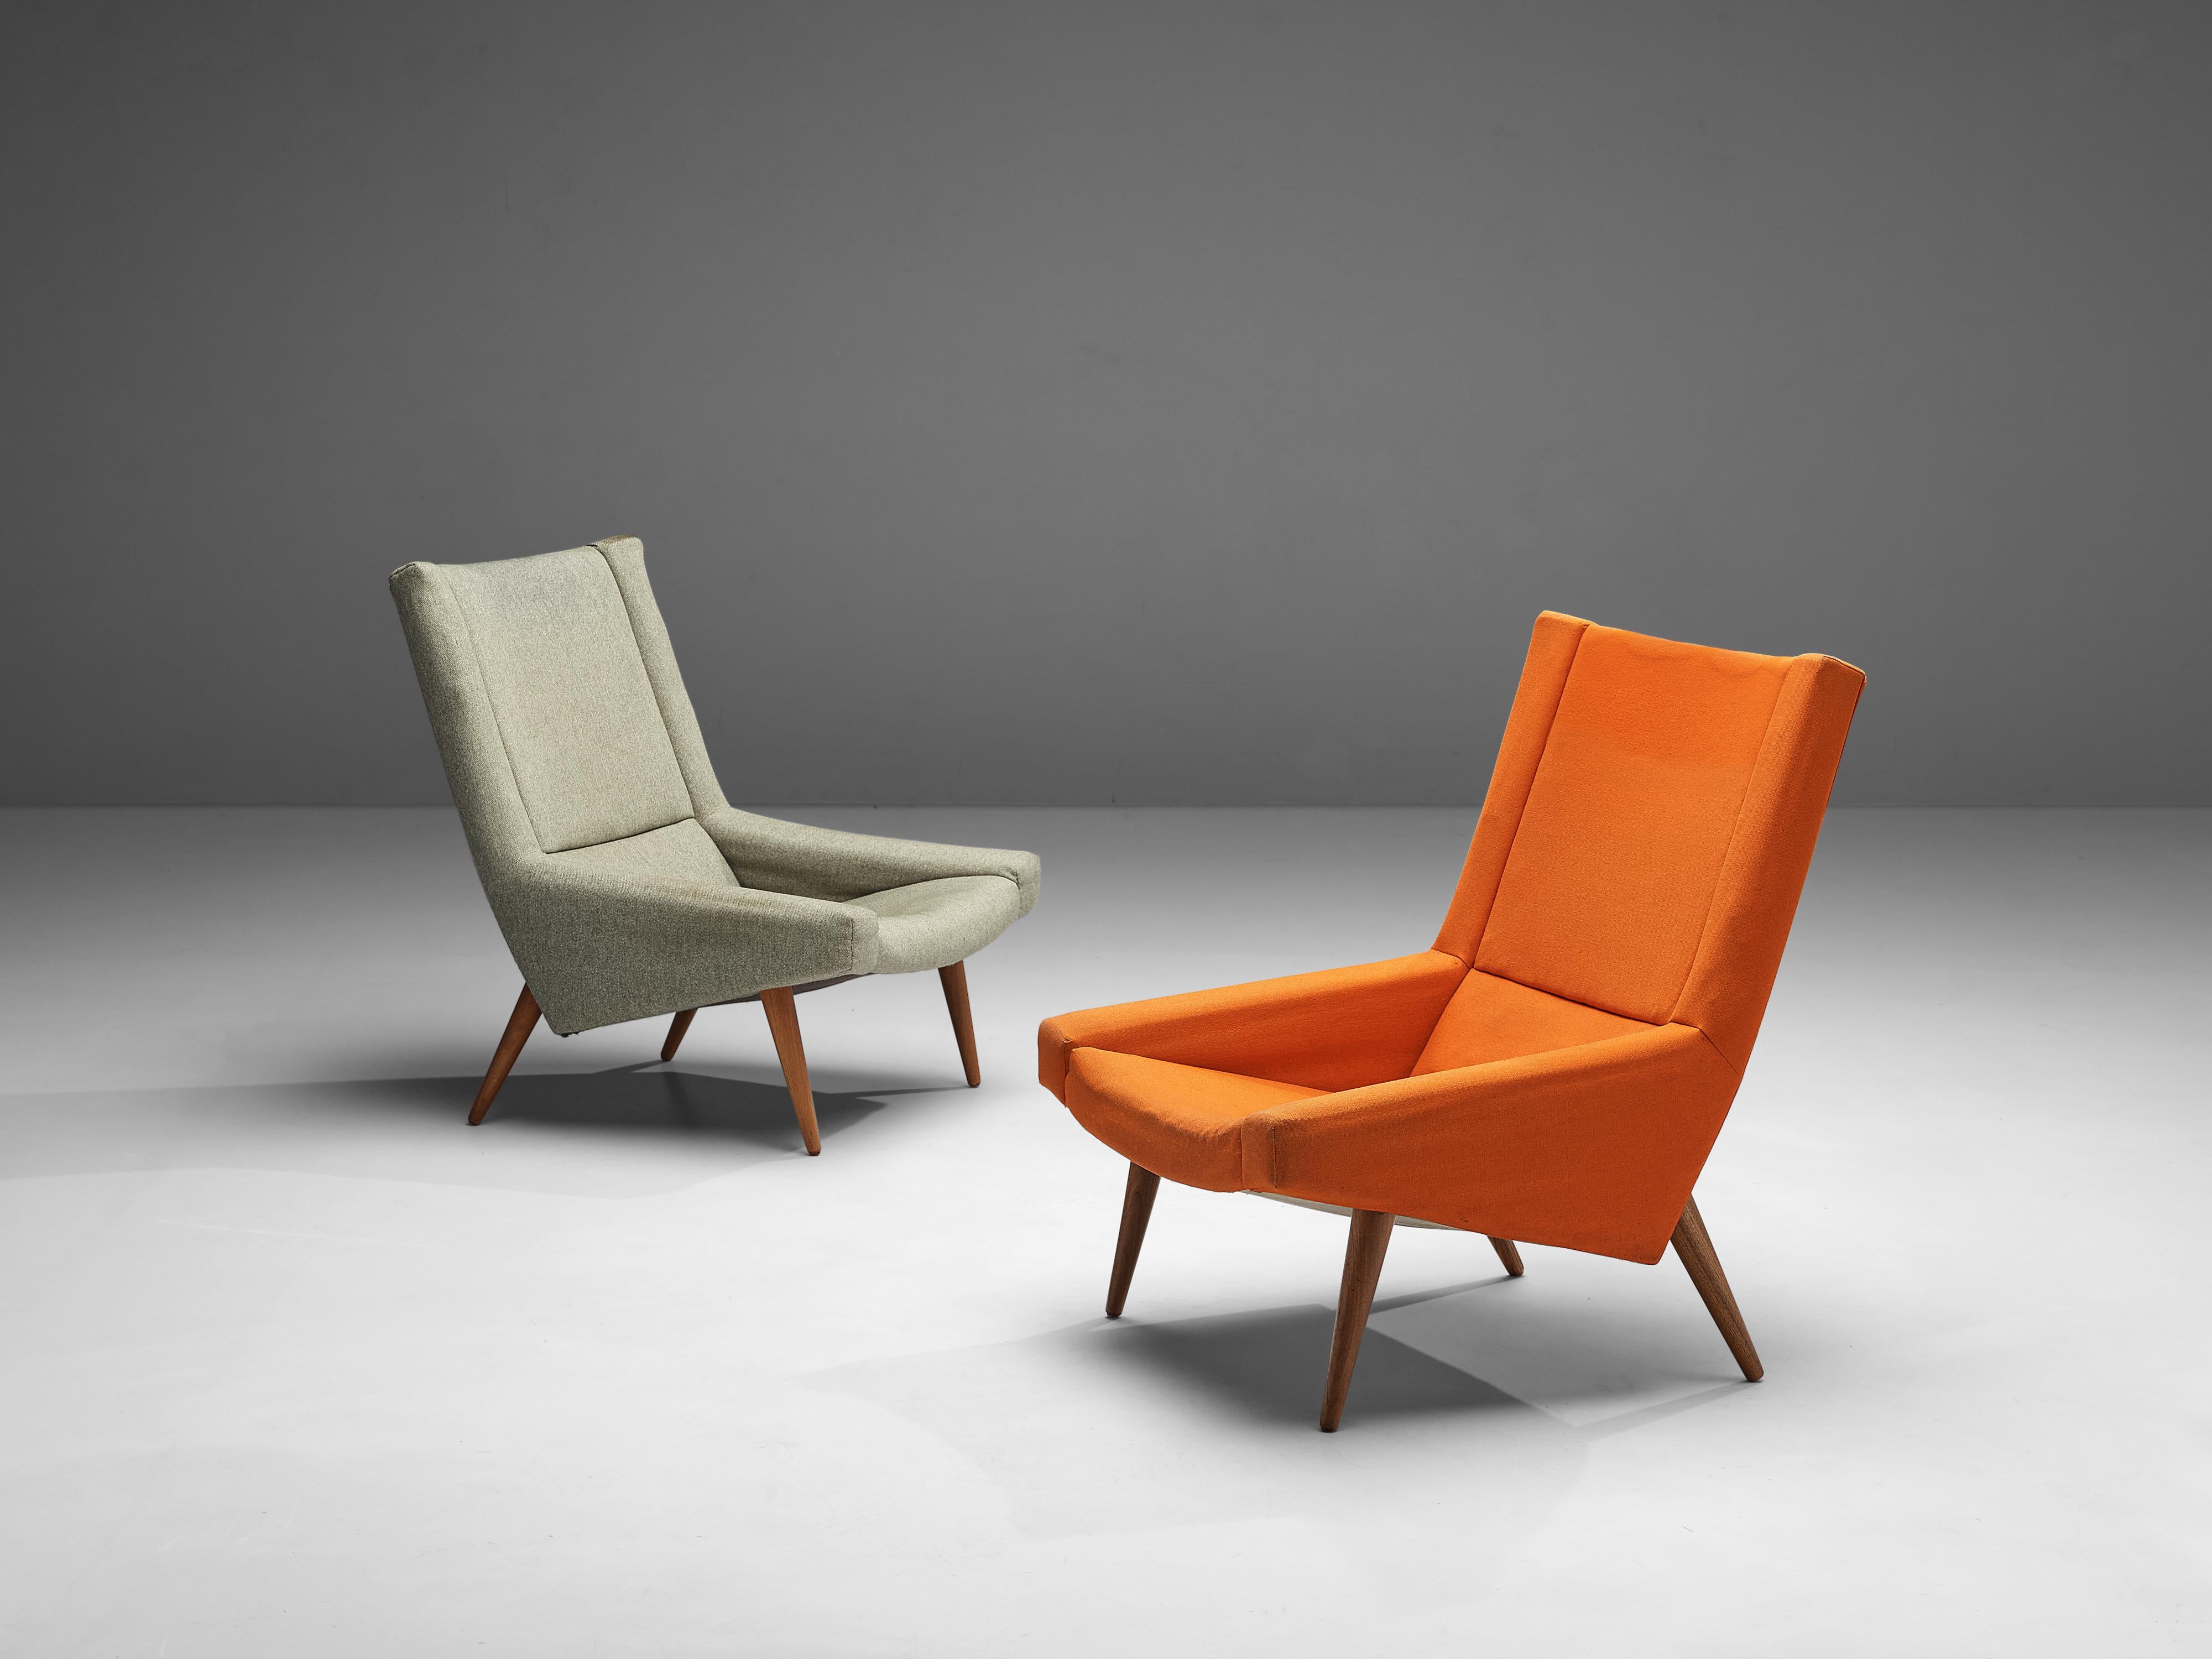 Illum Wikkelsø, paire de chaises longues, tissu, teck, Danemark, années 1950

Chaises longues confortables du designer danois Illum Wikkelsø. La forme de la chaise est caractérisée par un dossier haut qui se prolonge par des accoudoirs bas et